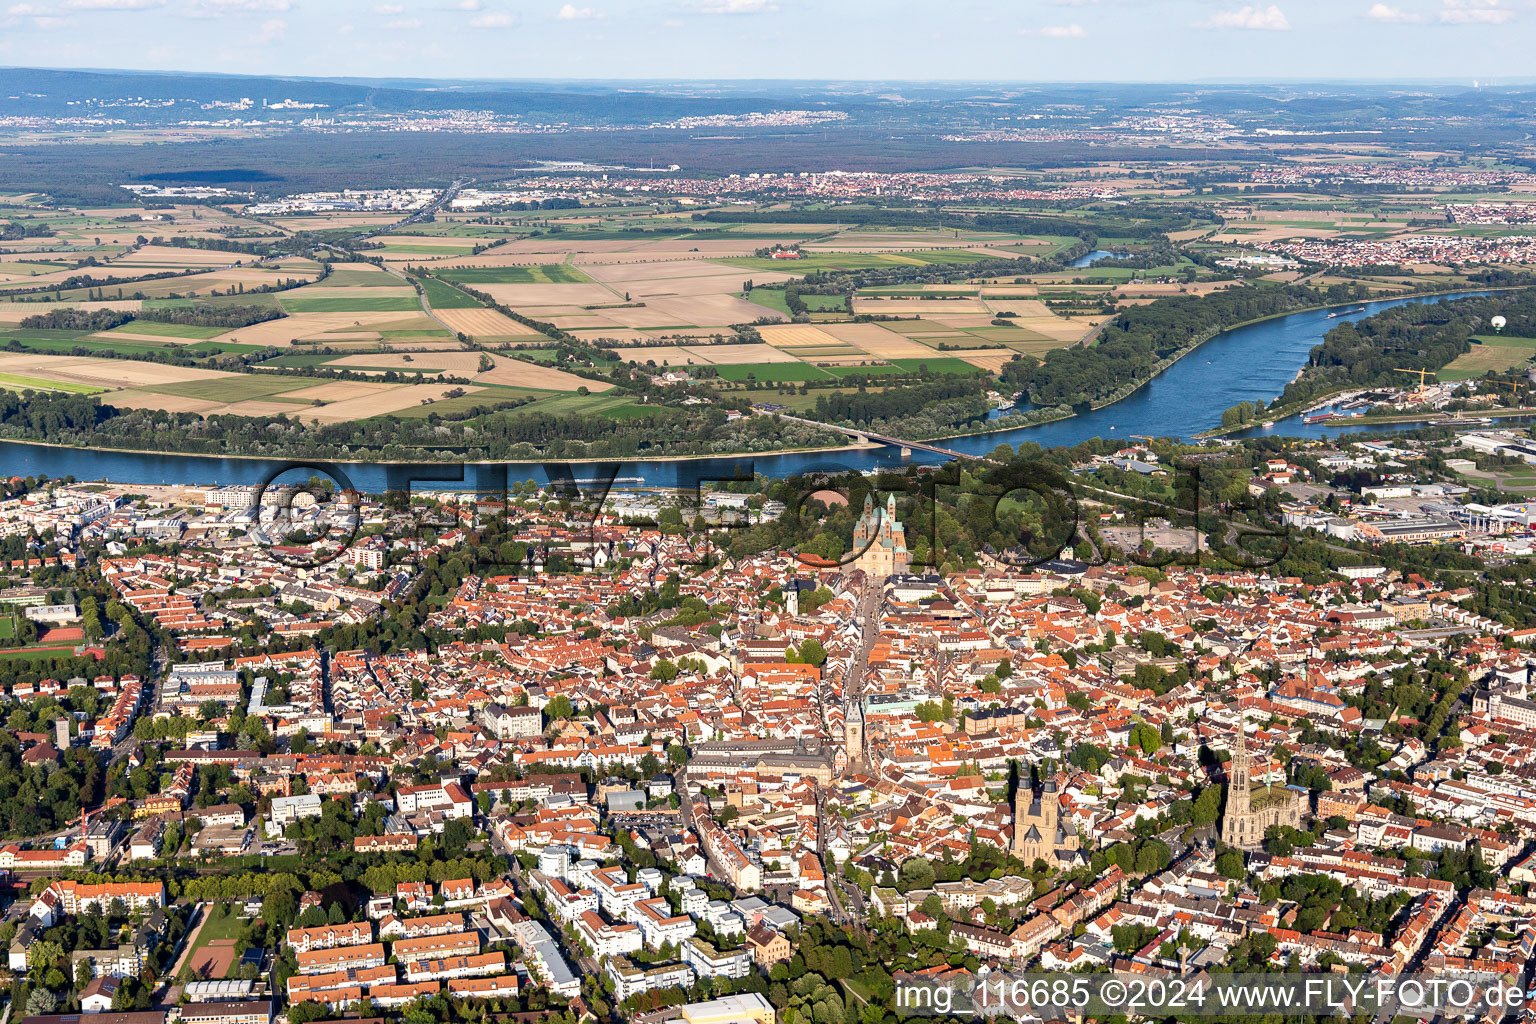 Luftbild von Flaniermeile und Einkaufsstraße Maximilianstraße vom Dom zum Altpörtel in Speyer im Bundesland Rheinland-Pfalz, Deutschland